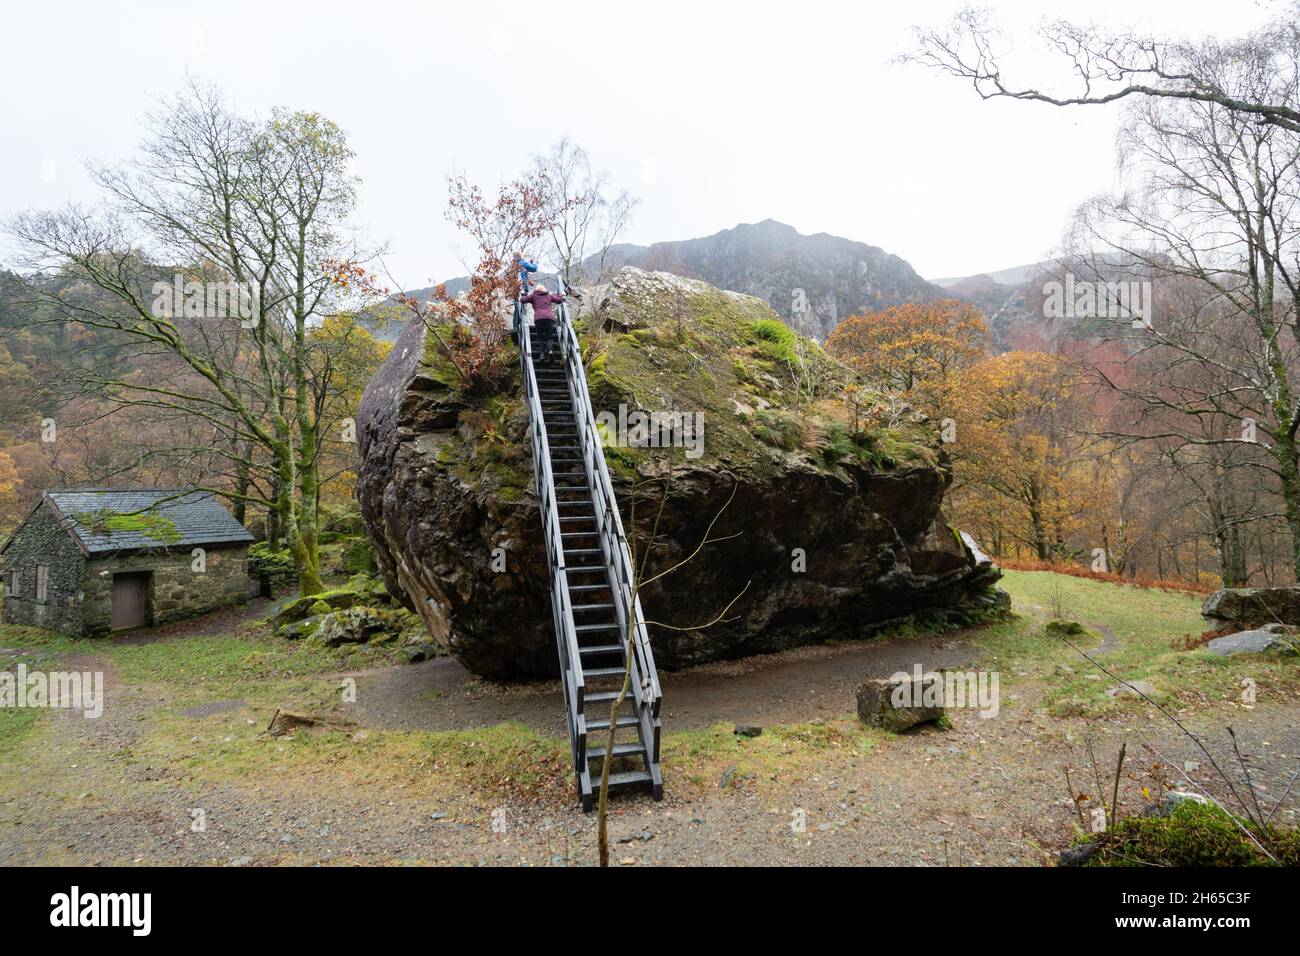 The Bowder Stone avec des visiteurs grimpant, un grand rocher de lave andesite et une attraction touristique à Borrowdale, Cumbria, Angleterre, Royaume-Uni Banque D'Images